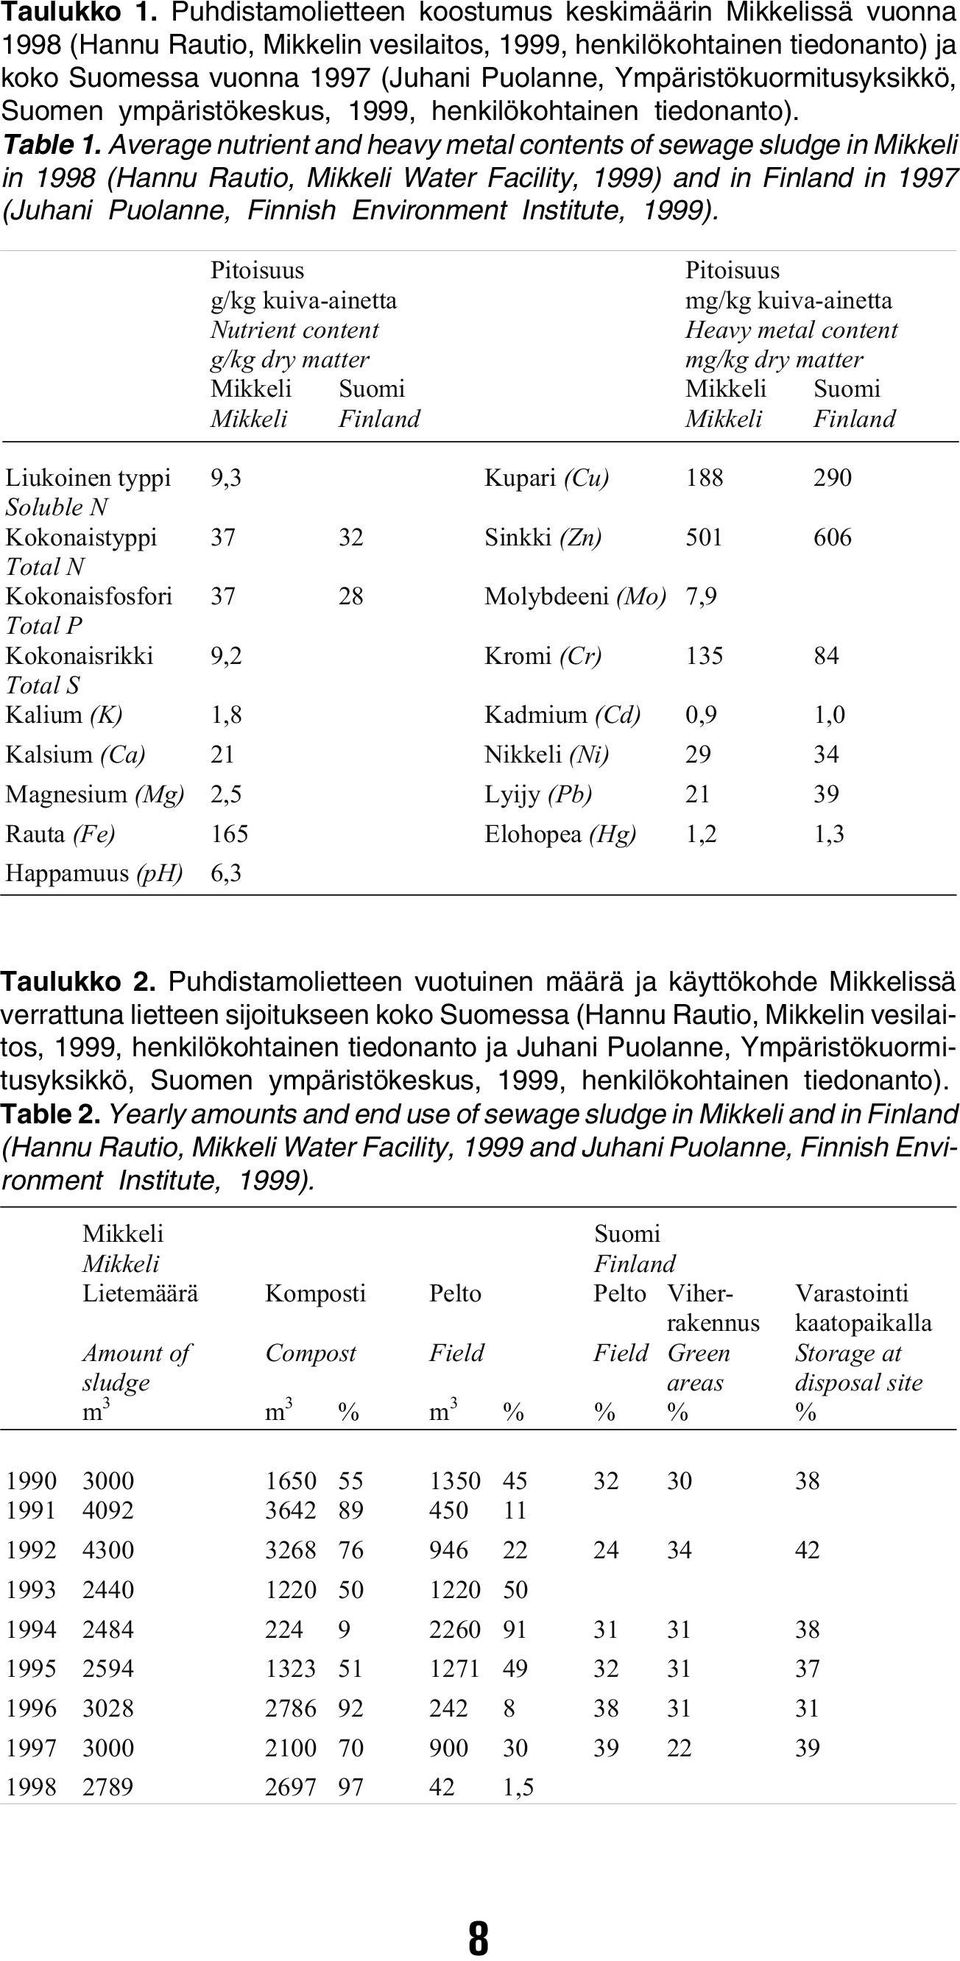 Ympäristökuormitusyksikkö, Suomen ympäristökeskus, 1999, henkilökohtainen tiedonanto). Table 1.